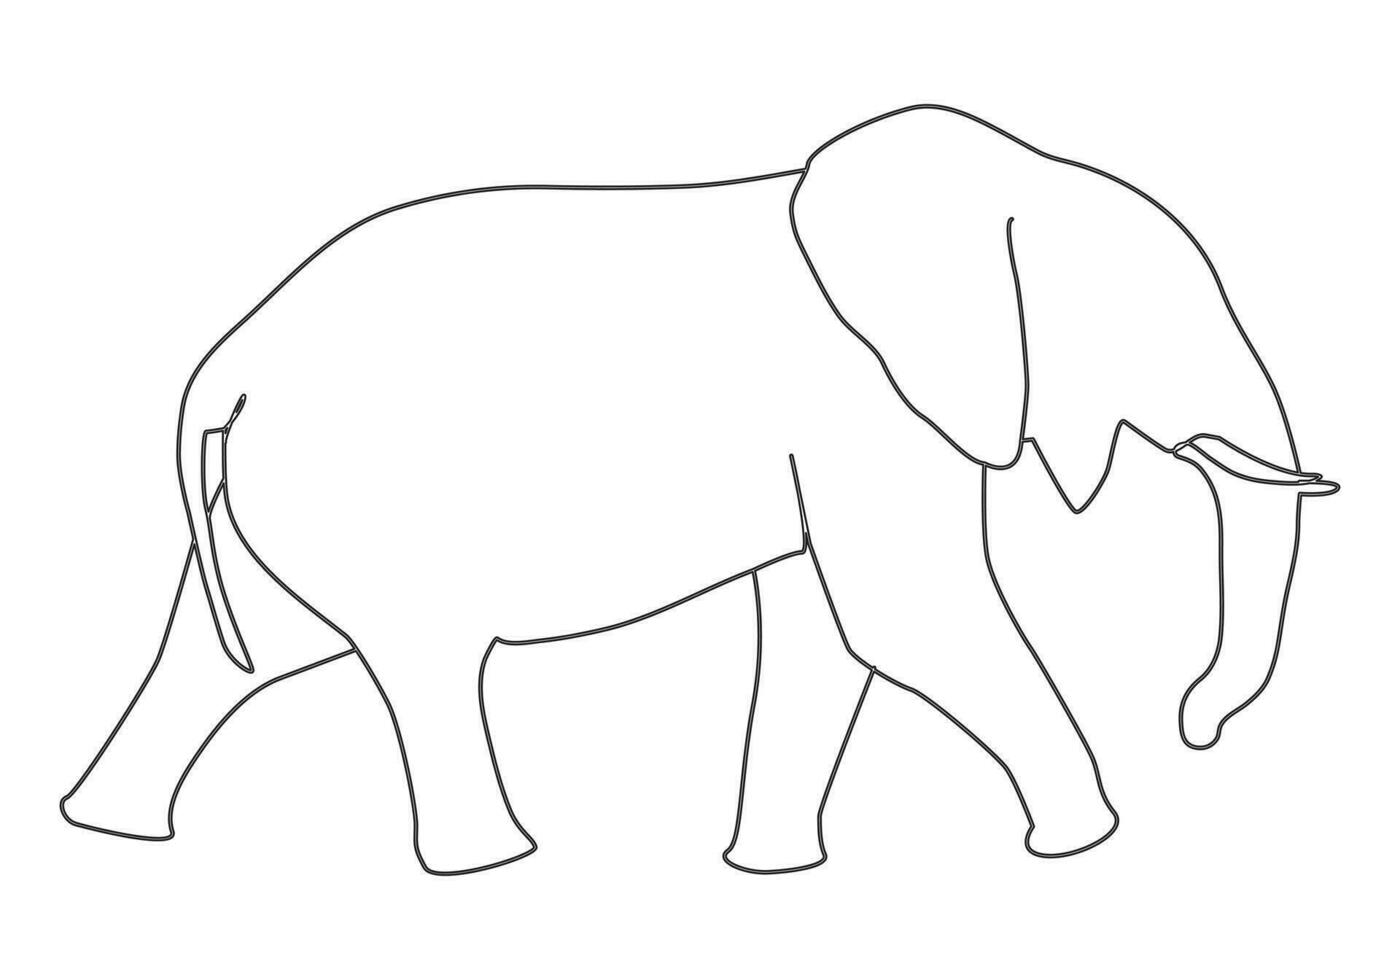 elefante nel continuo linea arte disegno. minimalista nero lineare schizzo isolato su bianca sfondo. vettore illustrazione